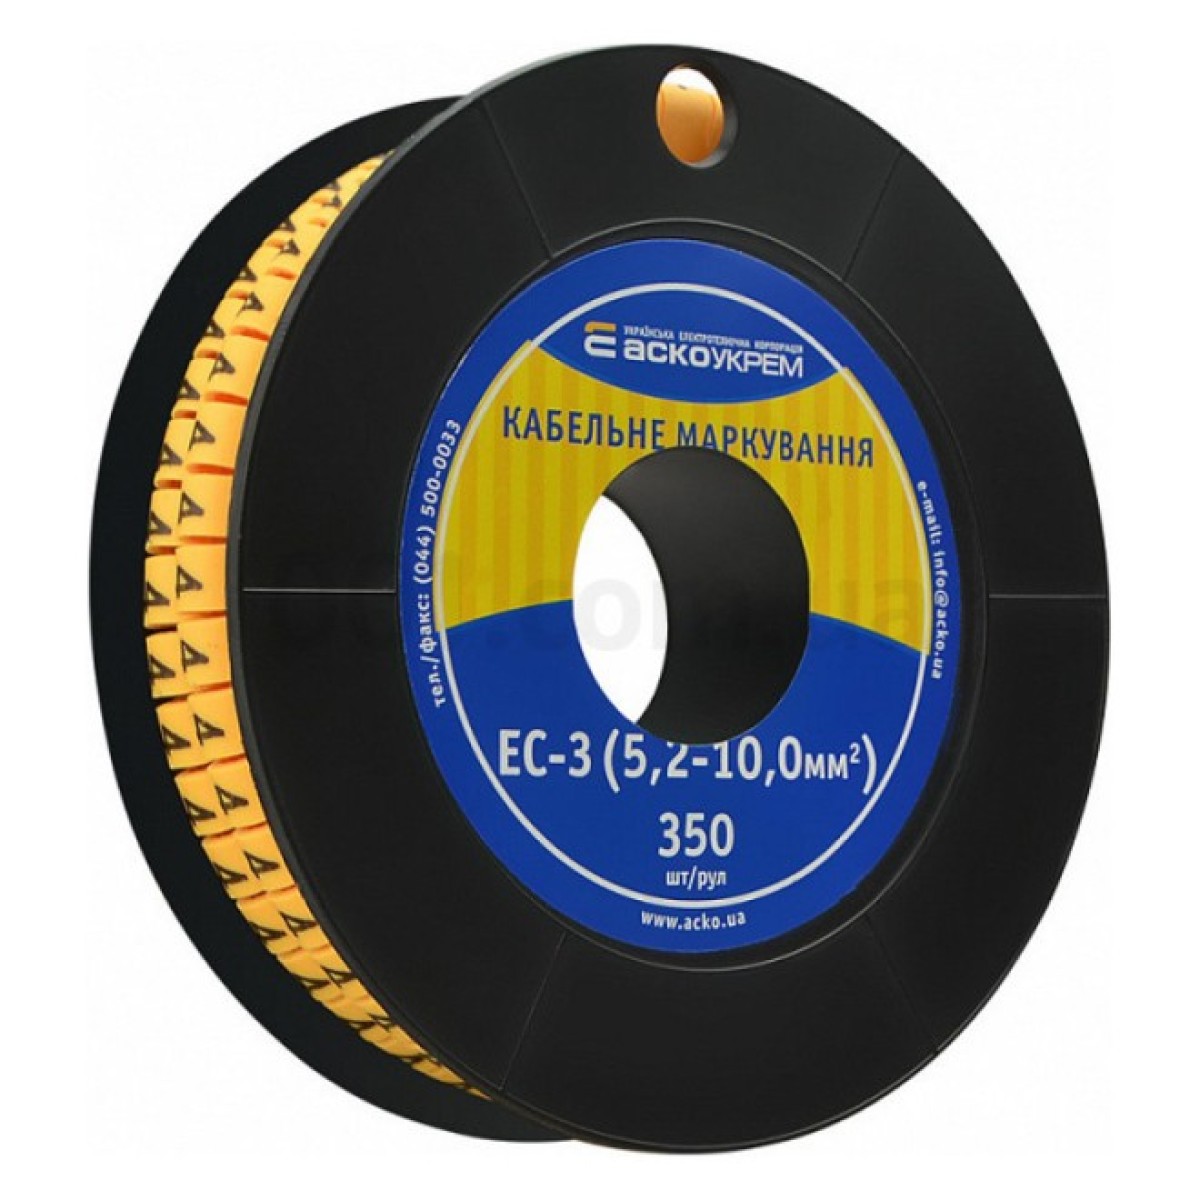 Маркування ЕС-3 для кабелю 5,2-10,0 мм² символ «4» (рулон 250 шт.), АСКО-УКРЕМ 256_256.jpg